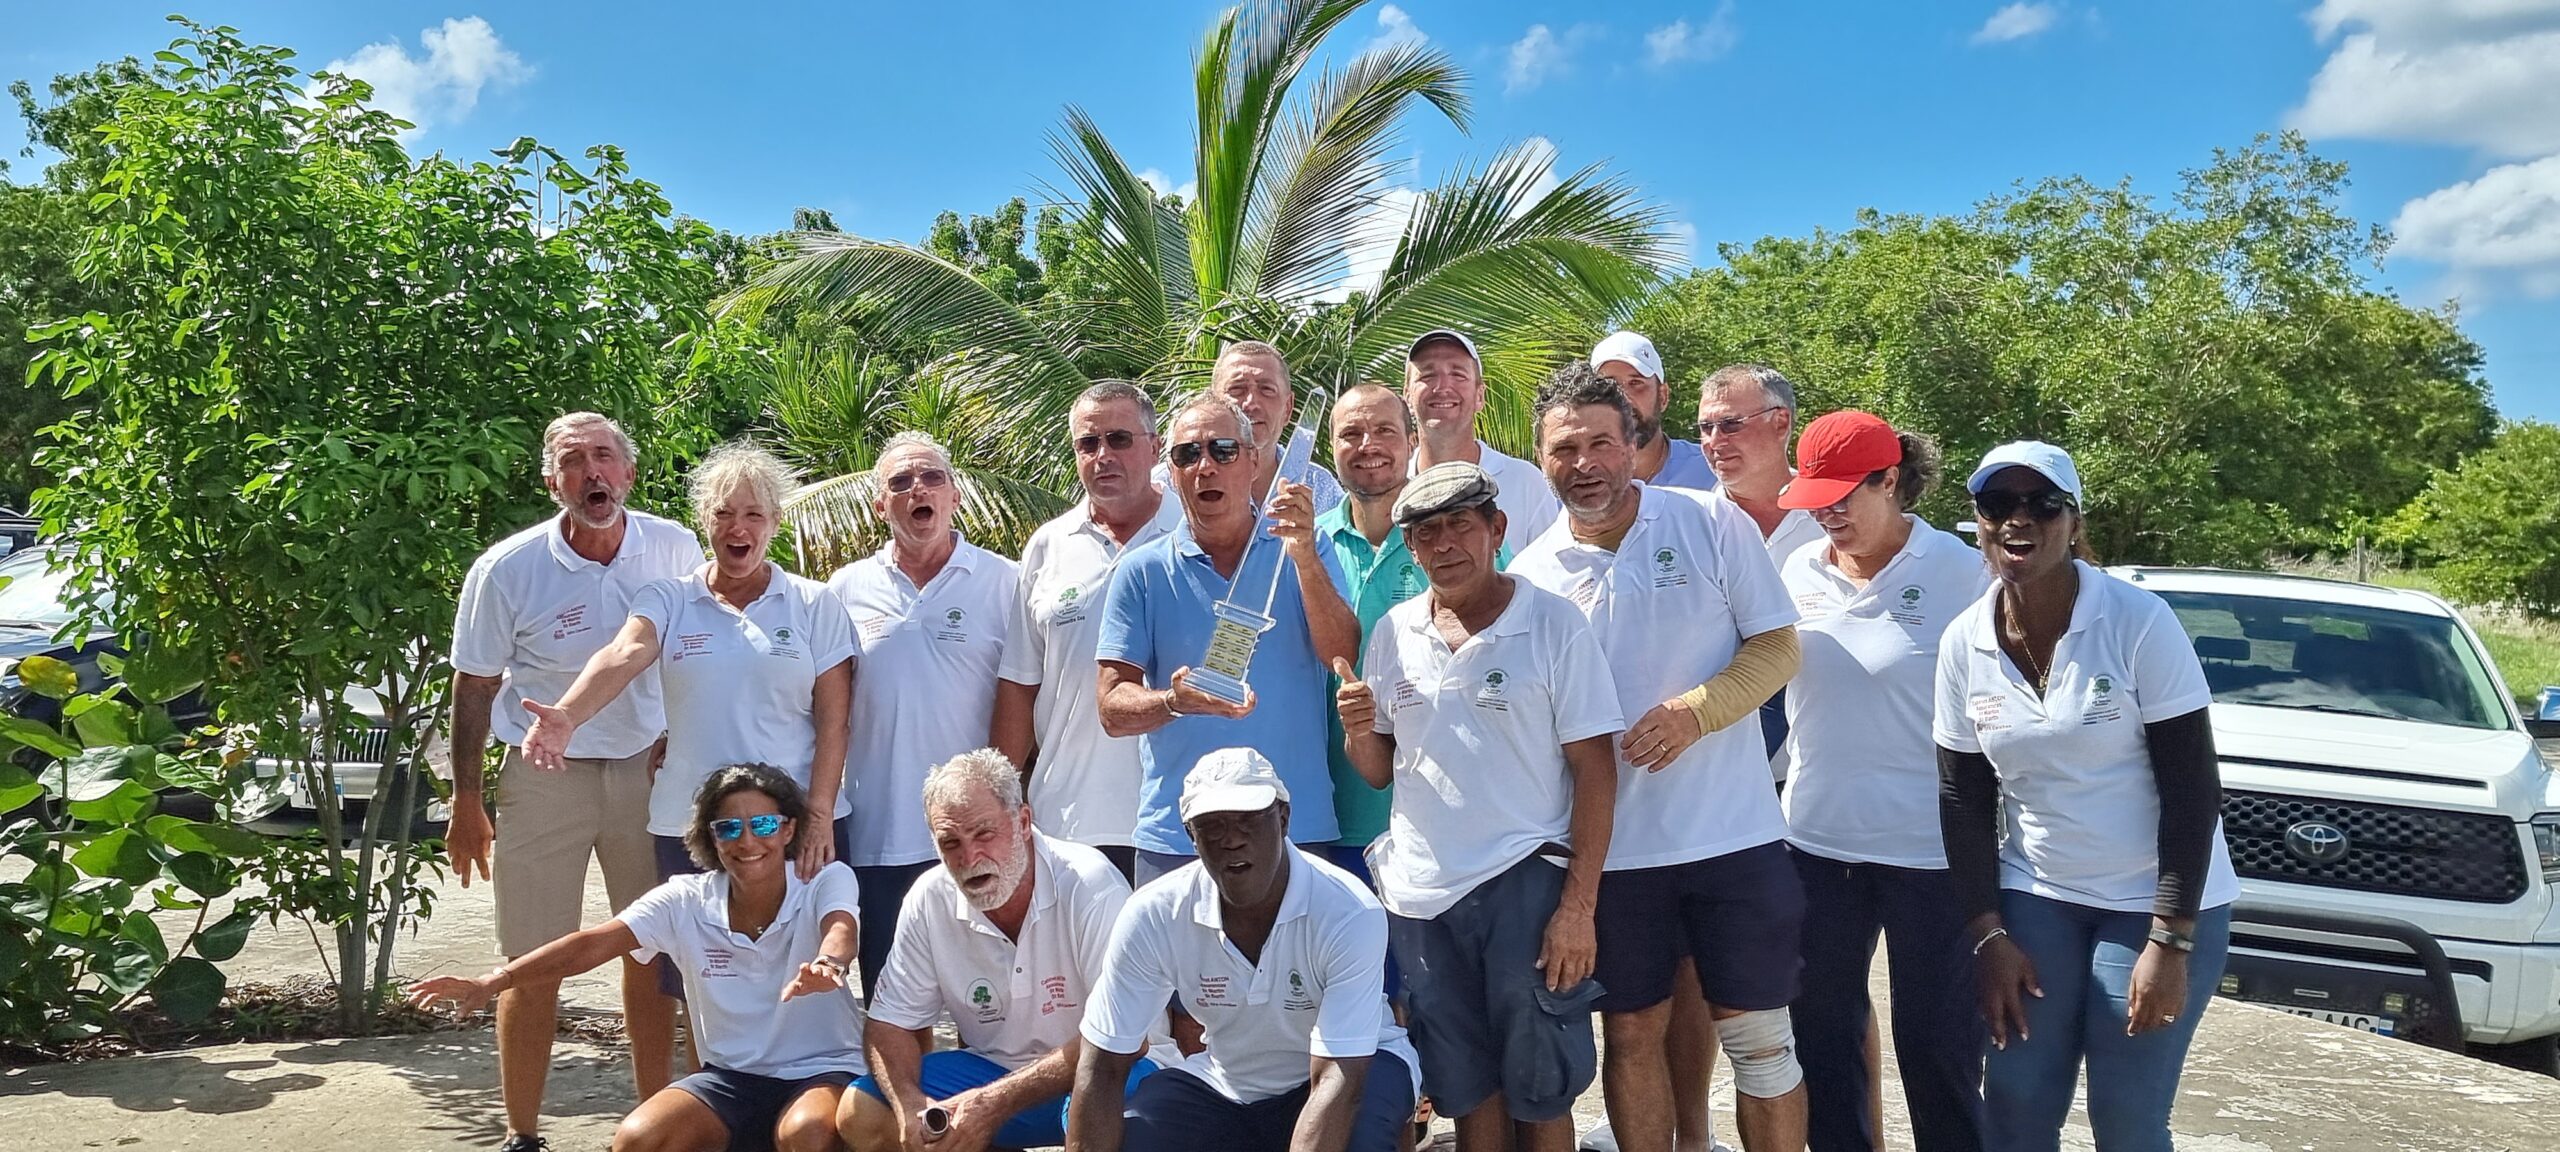 St Maarten Concordia Golf Cup, St Maarten's day, events on Sint Maarten, Things to do on Sint Maarten